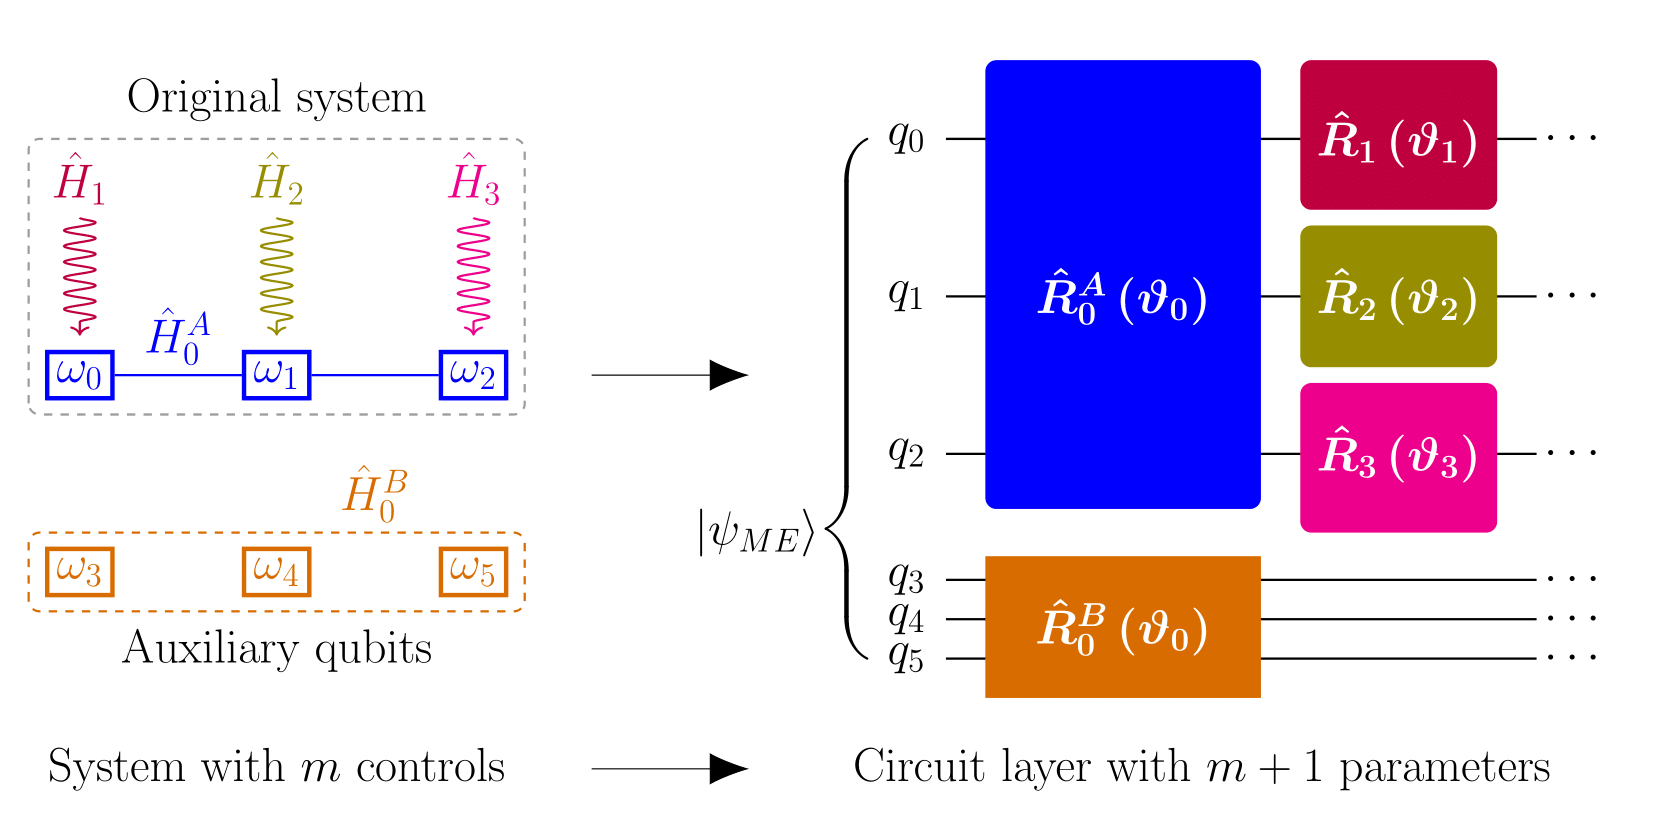 सार्वभौमिक क्वांटम कंप्यूटिंग की क्षमता का निर्धारण: आयामी अभिव्यक्ति के माध्यम से नियंत्रणीयता का परीक्षण